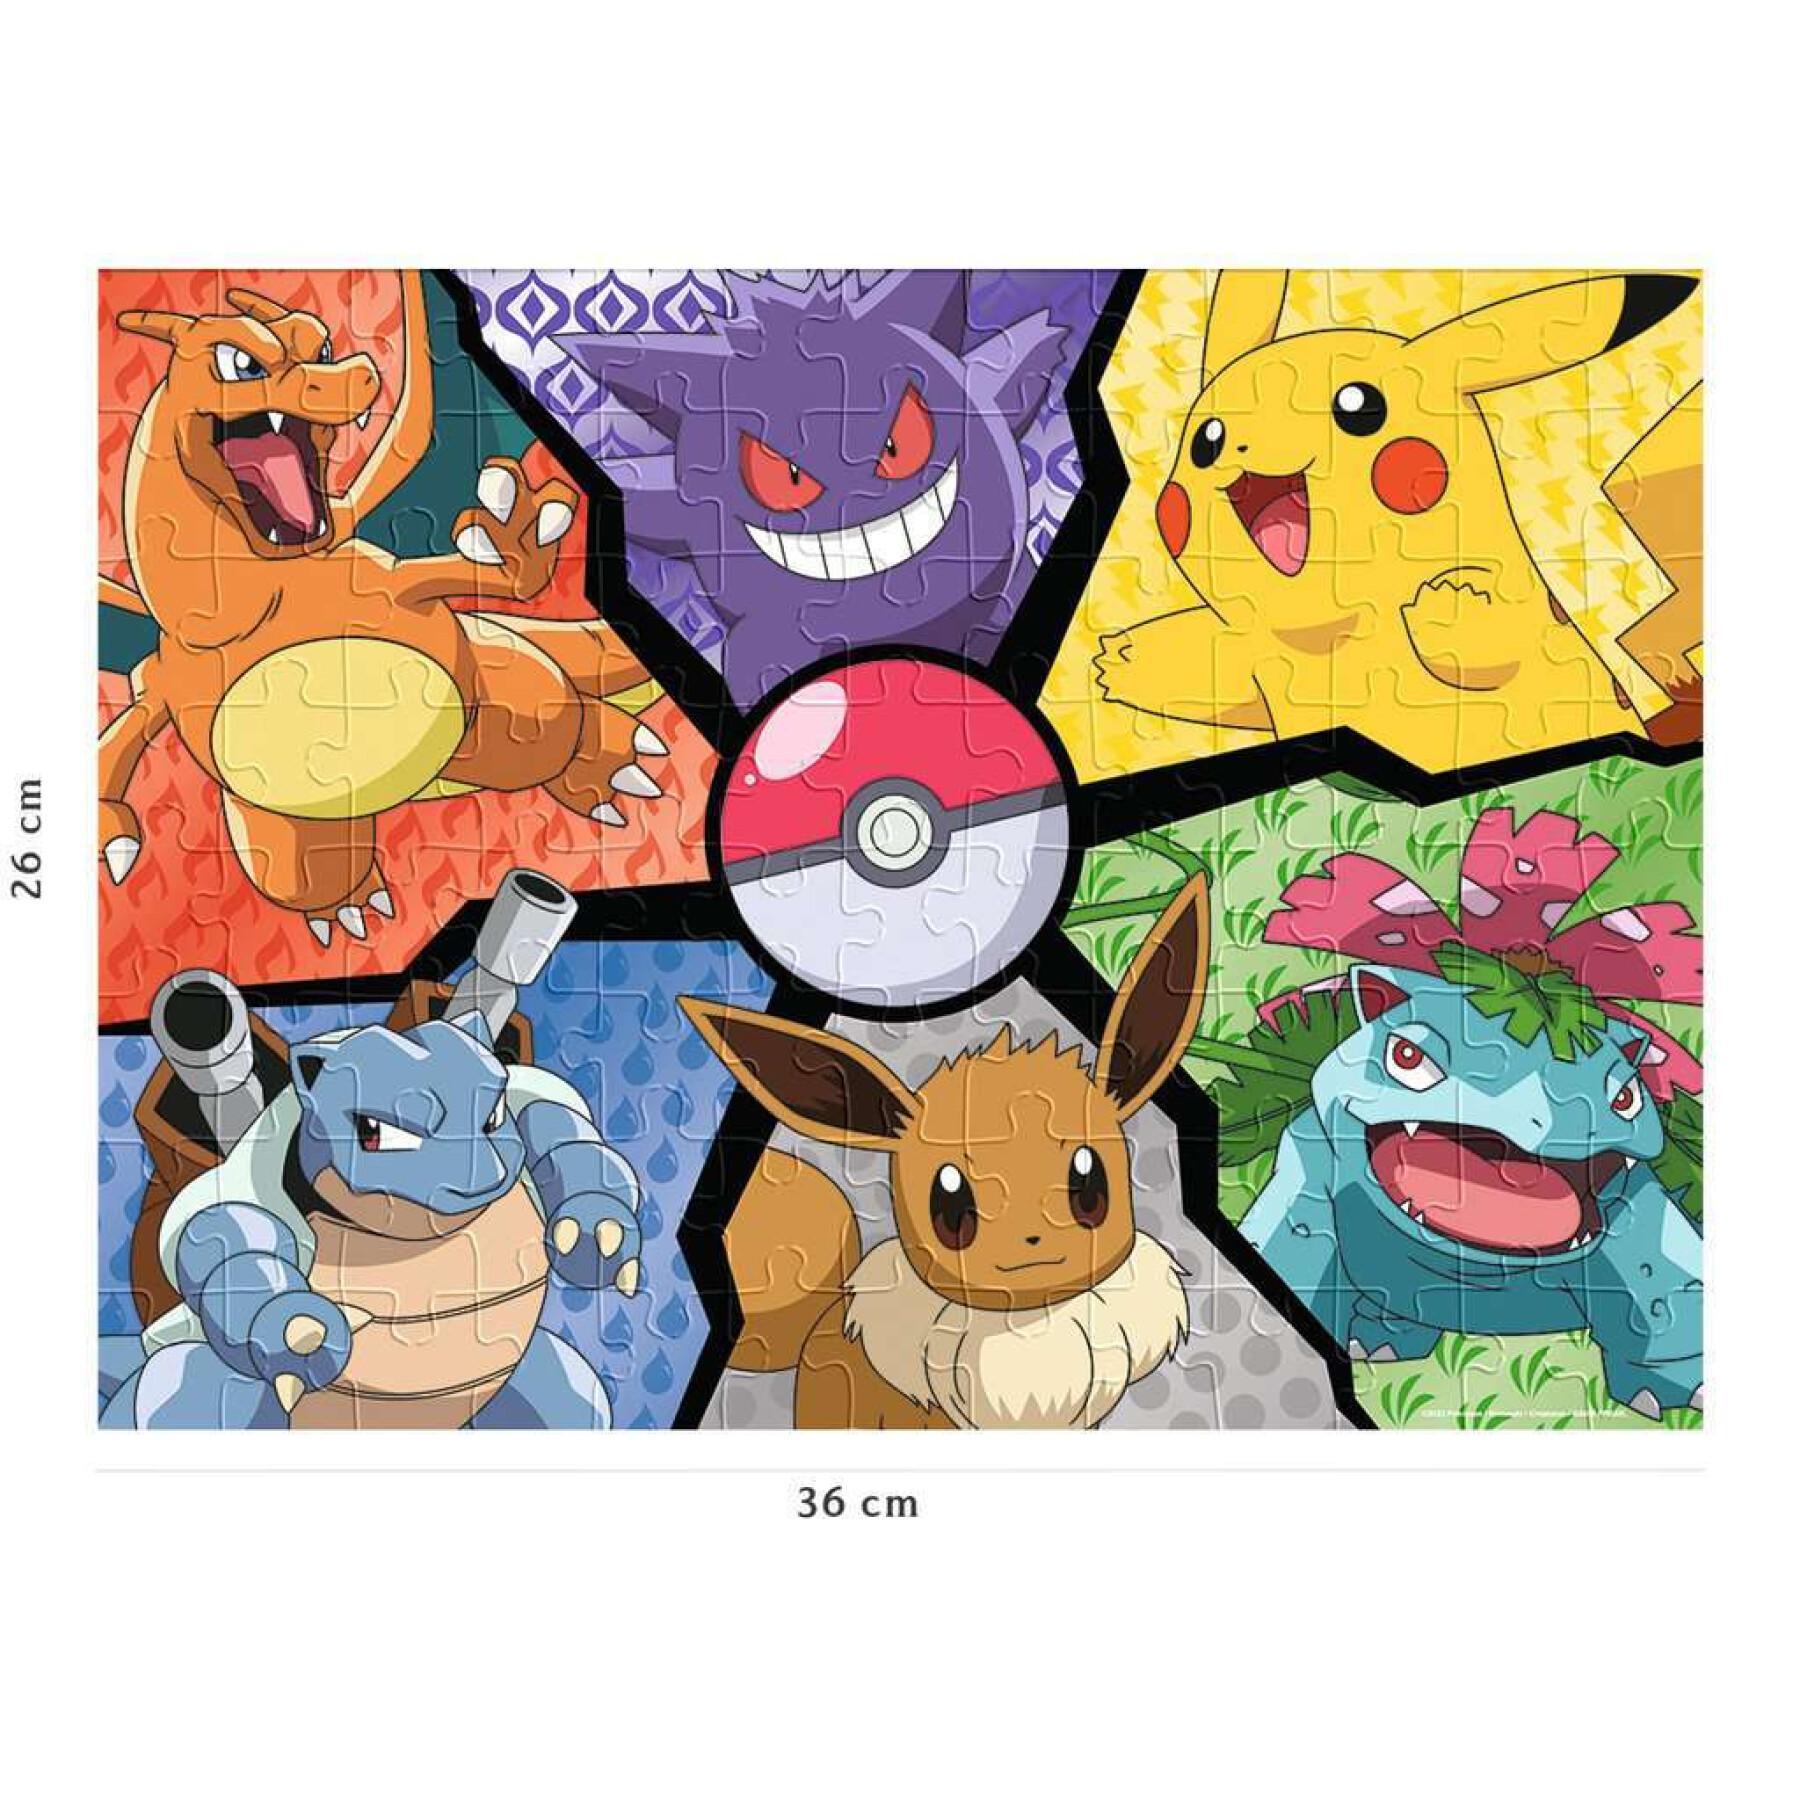 Puzzle da 100 pezzi di pikachu, evoli e co. Ravensburger Pokémon